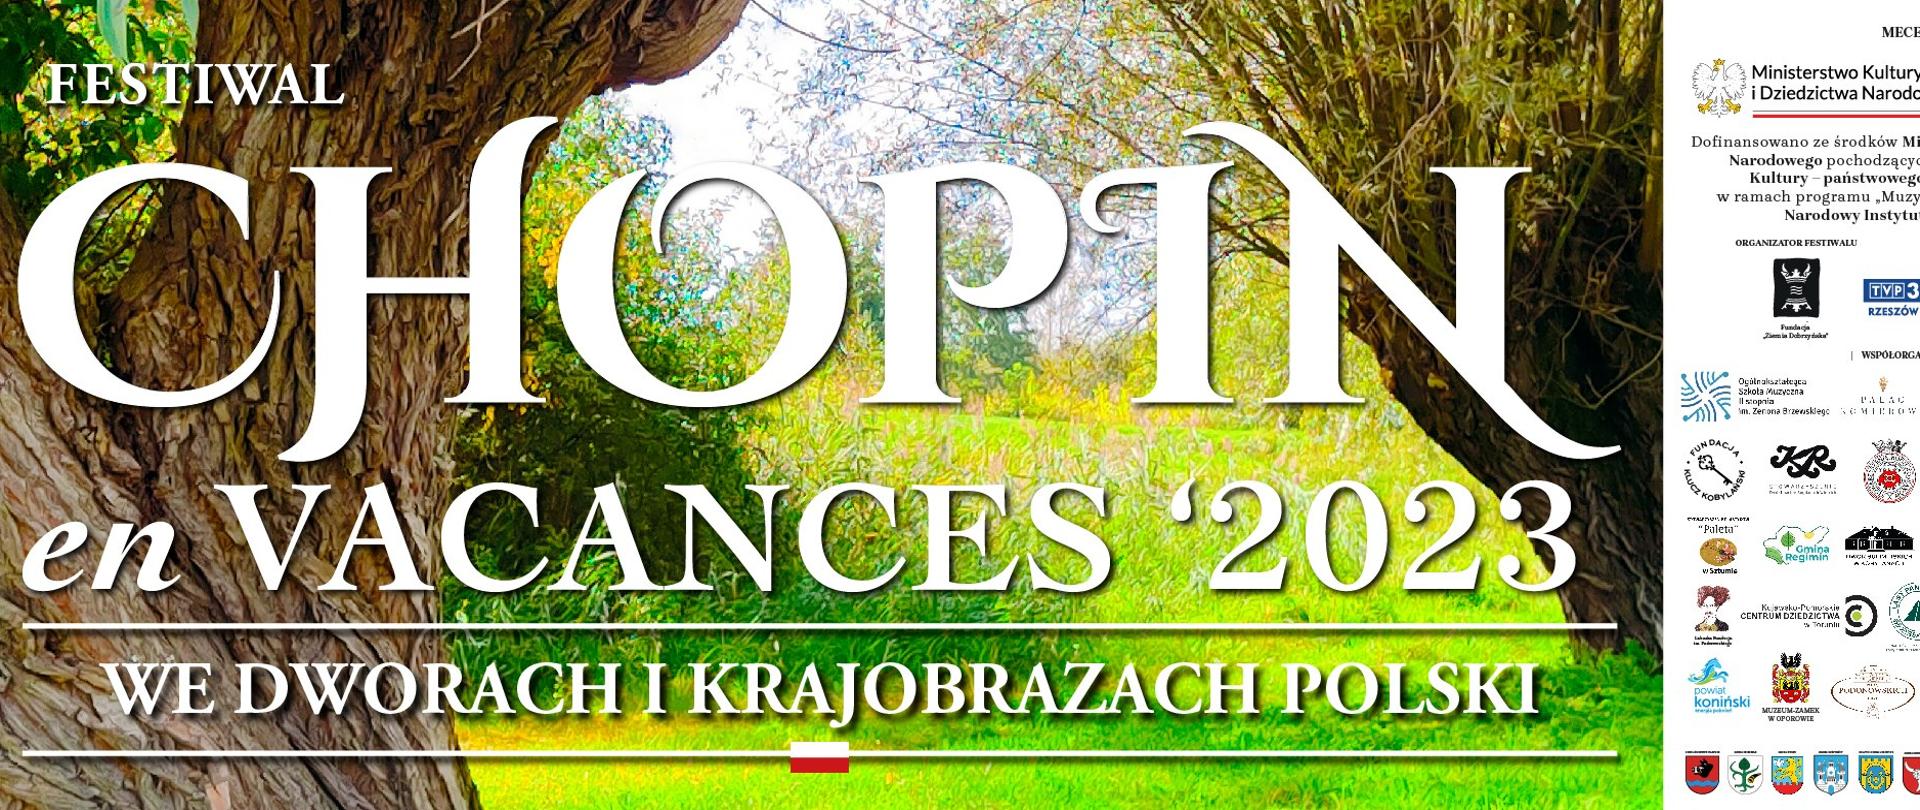 Na tle zielonych drzew i trawy napis festiwal Chopin en vacances 2023, we dworach i krajobrazach Polski